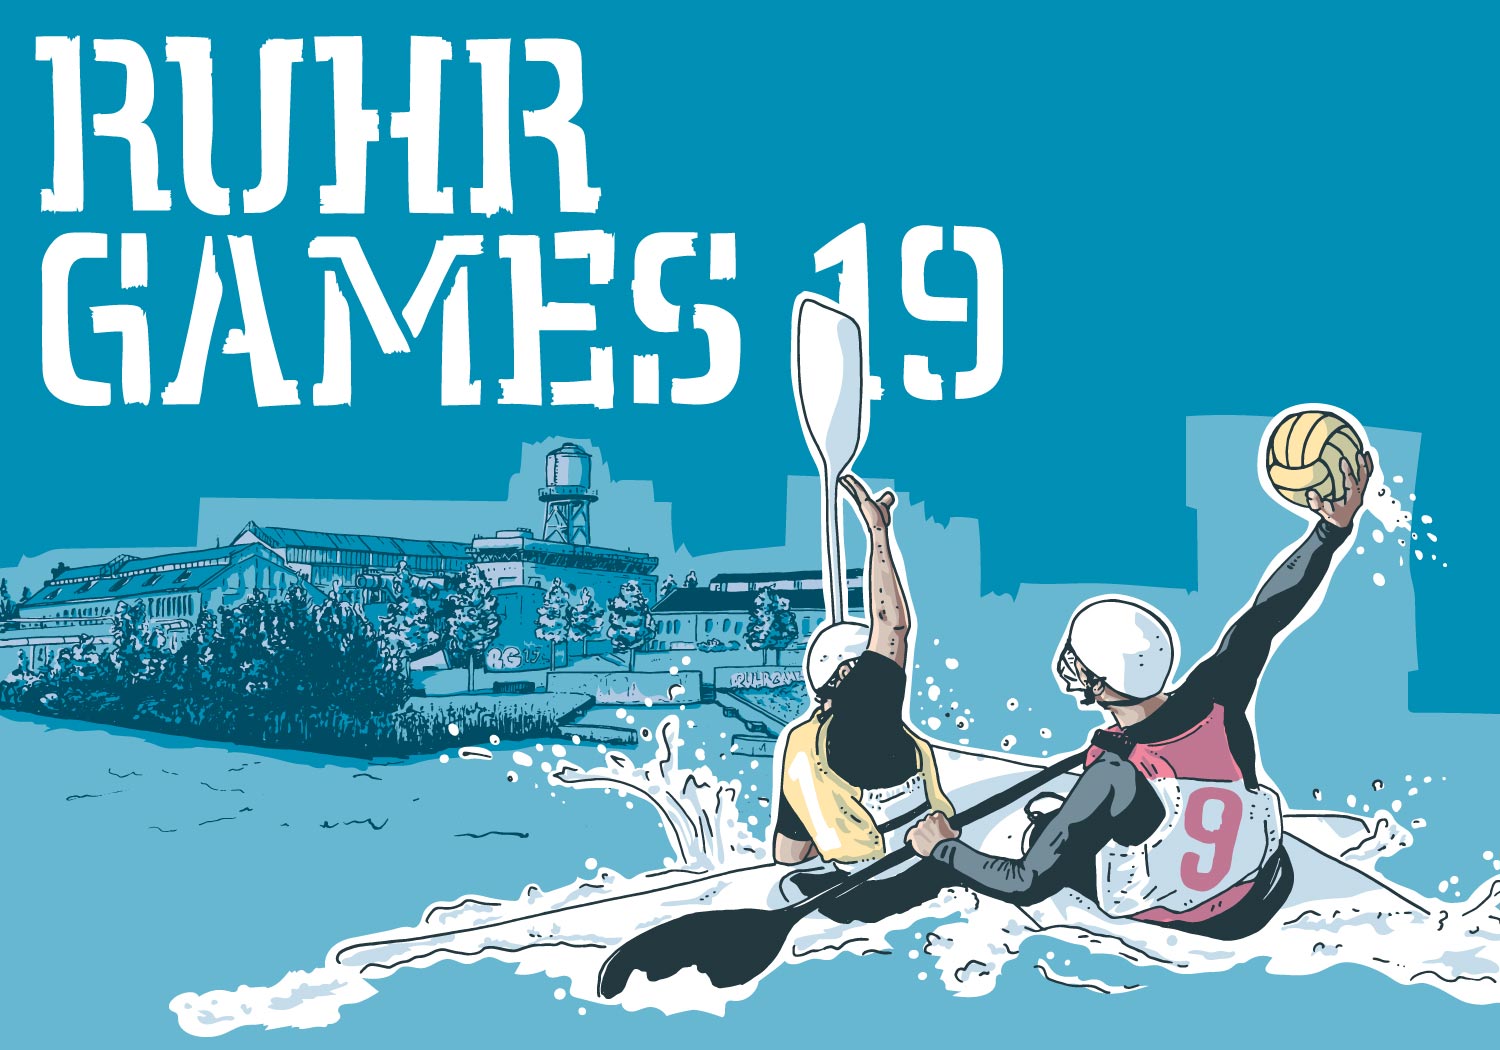 Ruhr Games 19, Wasserpolo